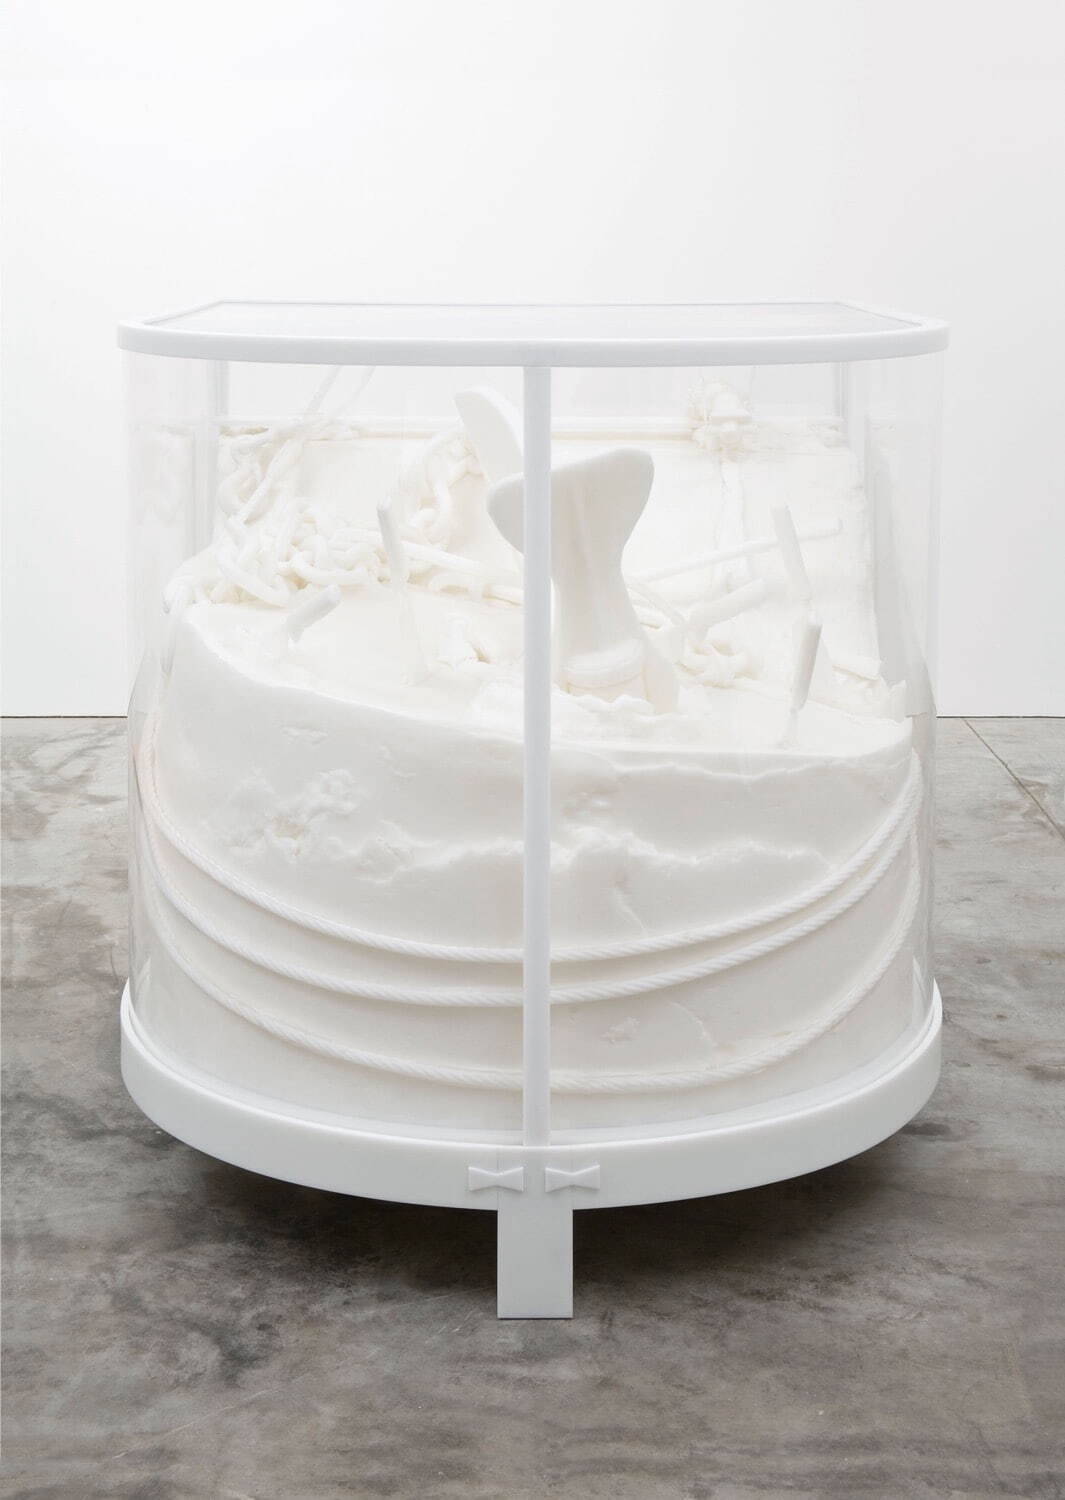 マシュー・バーニー《日新丸のキャビネット》2006年
ポリカプロラクトンと熱可逆性と自己潤滑性プラスティックの鋳造、アクリル製ヴィトリーヌ
138.4×137.5×168.9cm
©︎ Matthew Barney